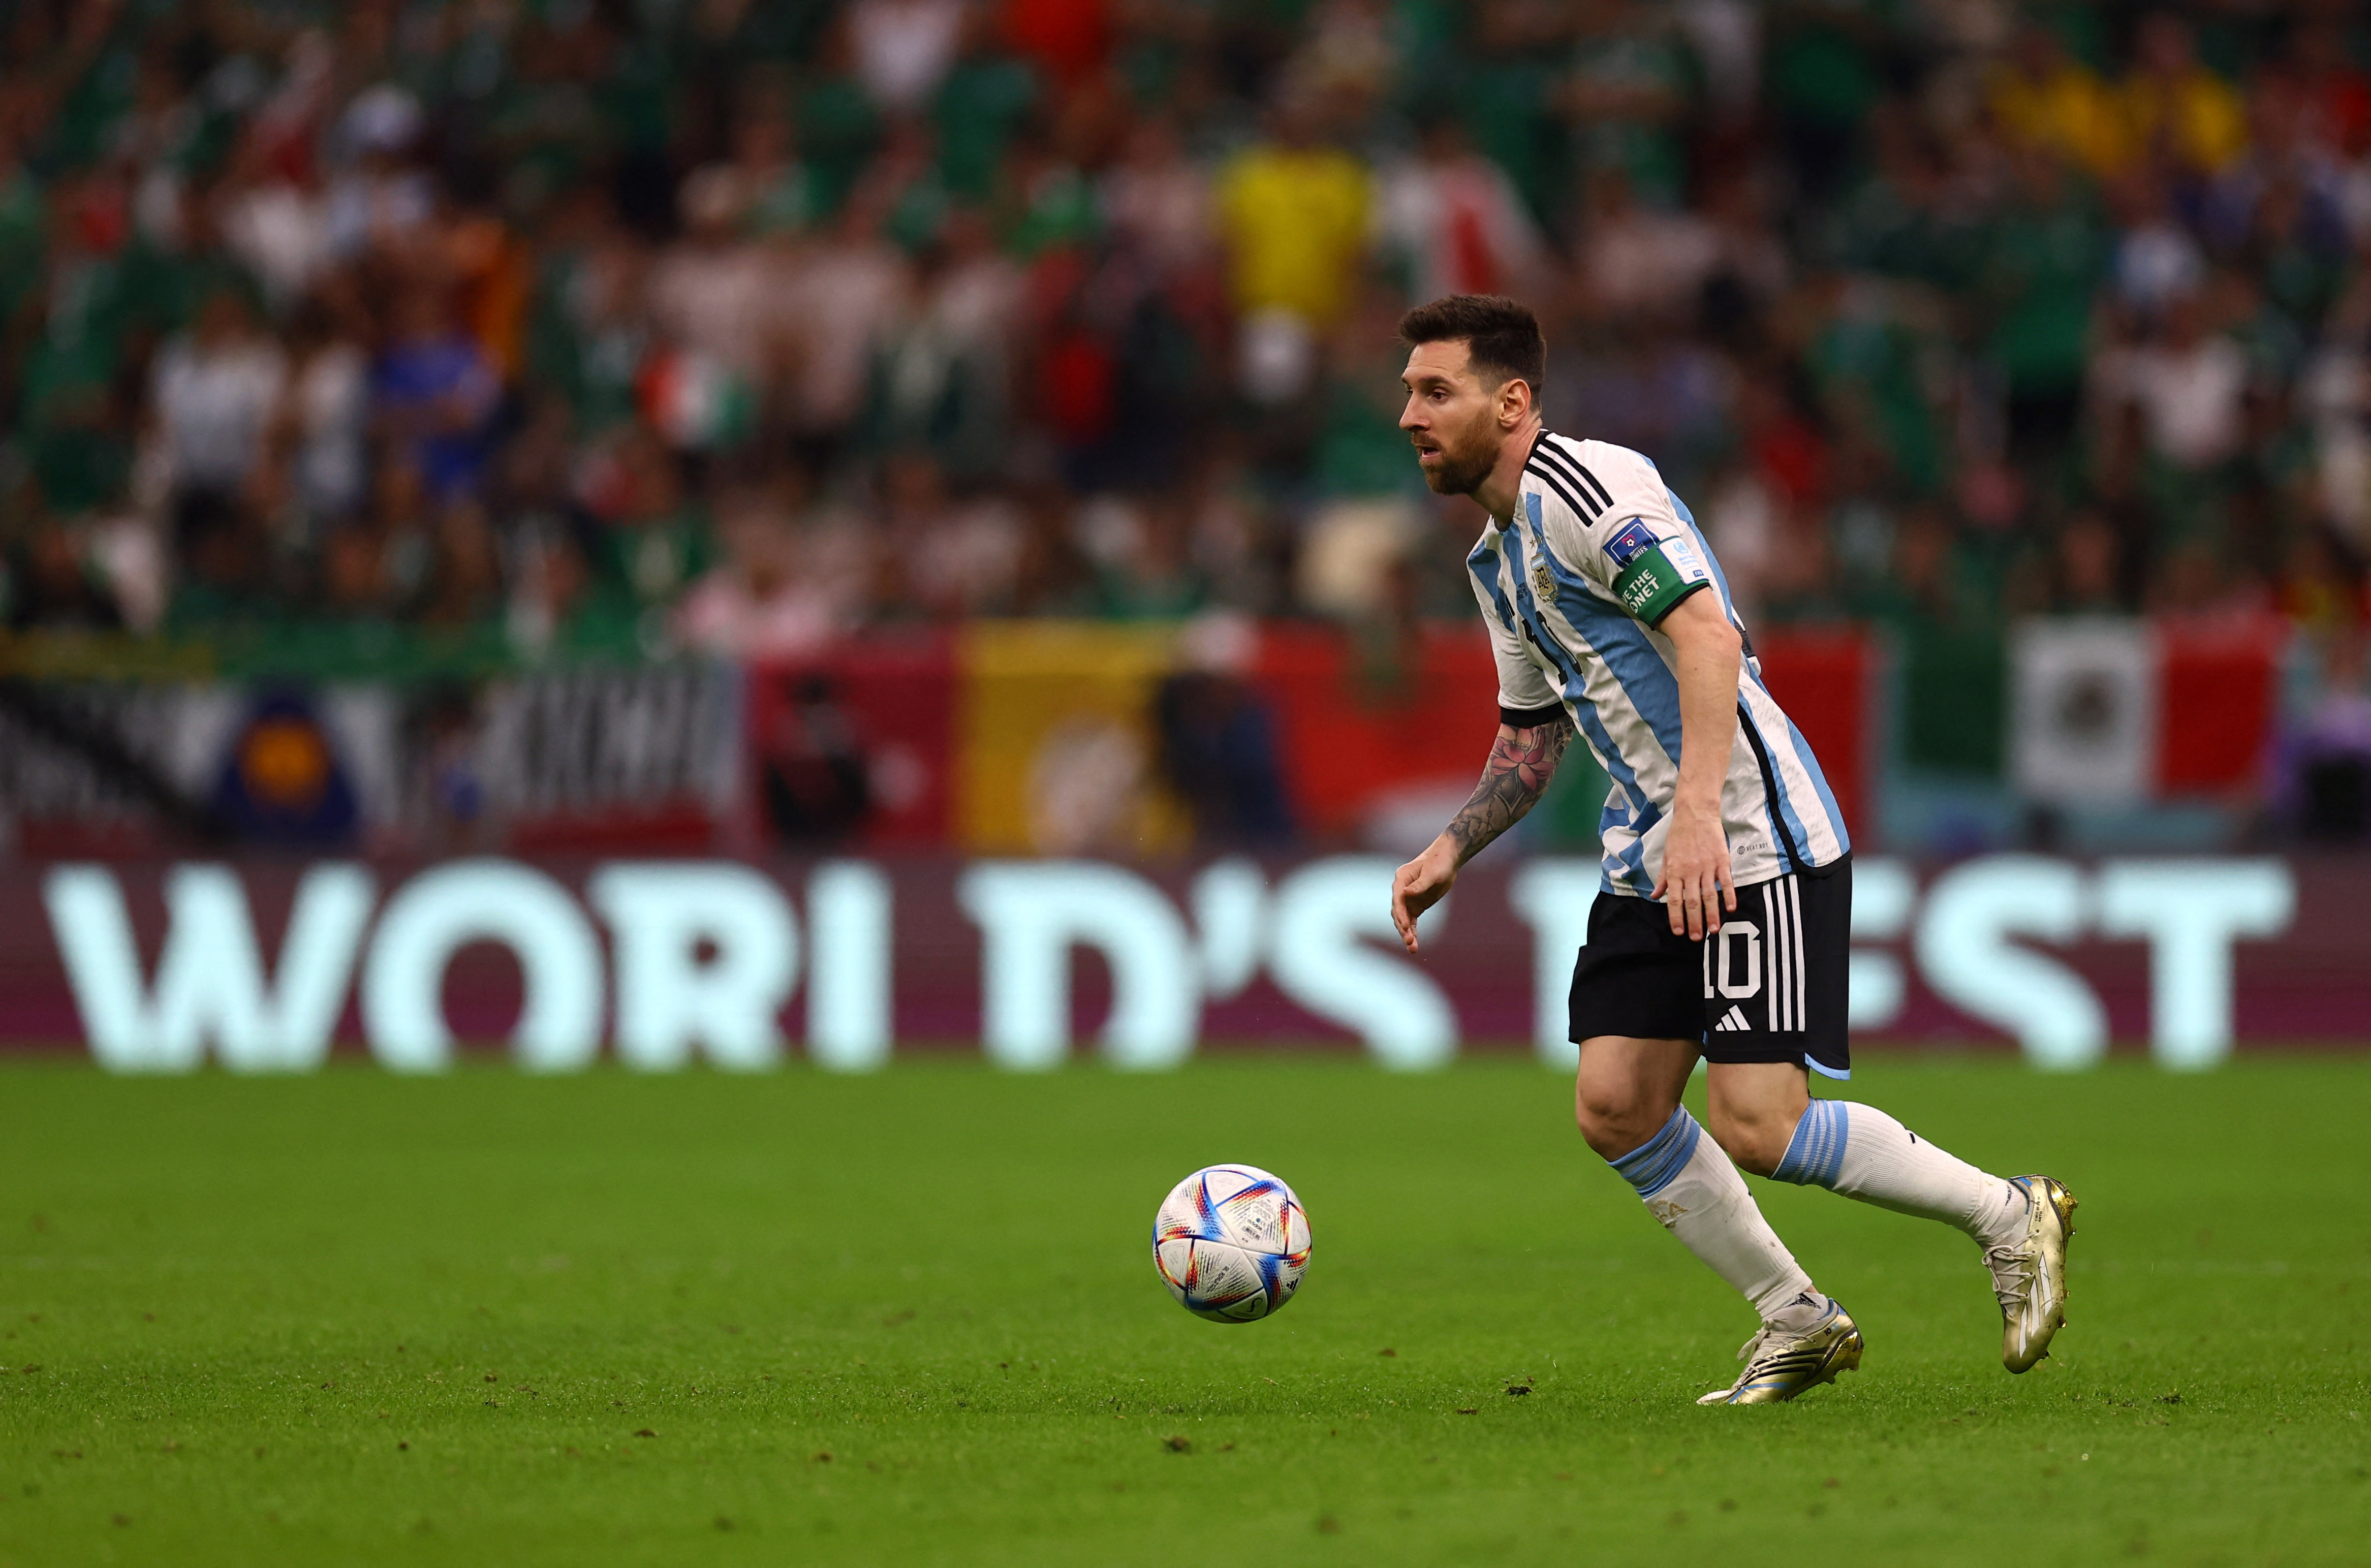 El 10 de Argentina tuvo una opción clara, pero el remate se fue desviado (REUTERS/Kai Pfaffenbach)